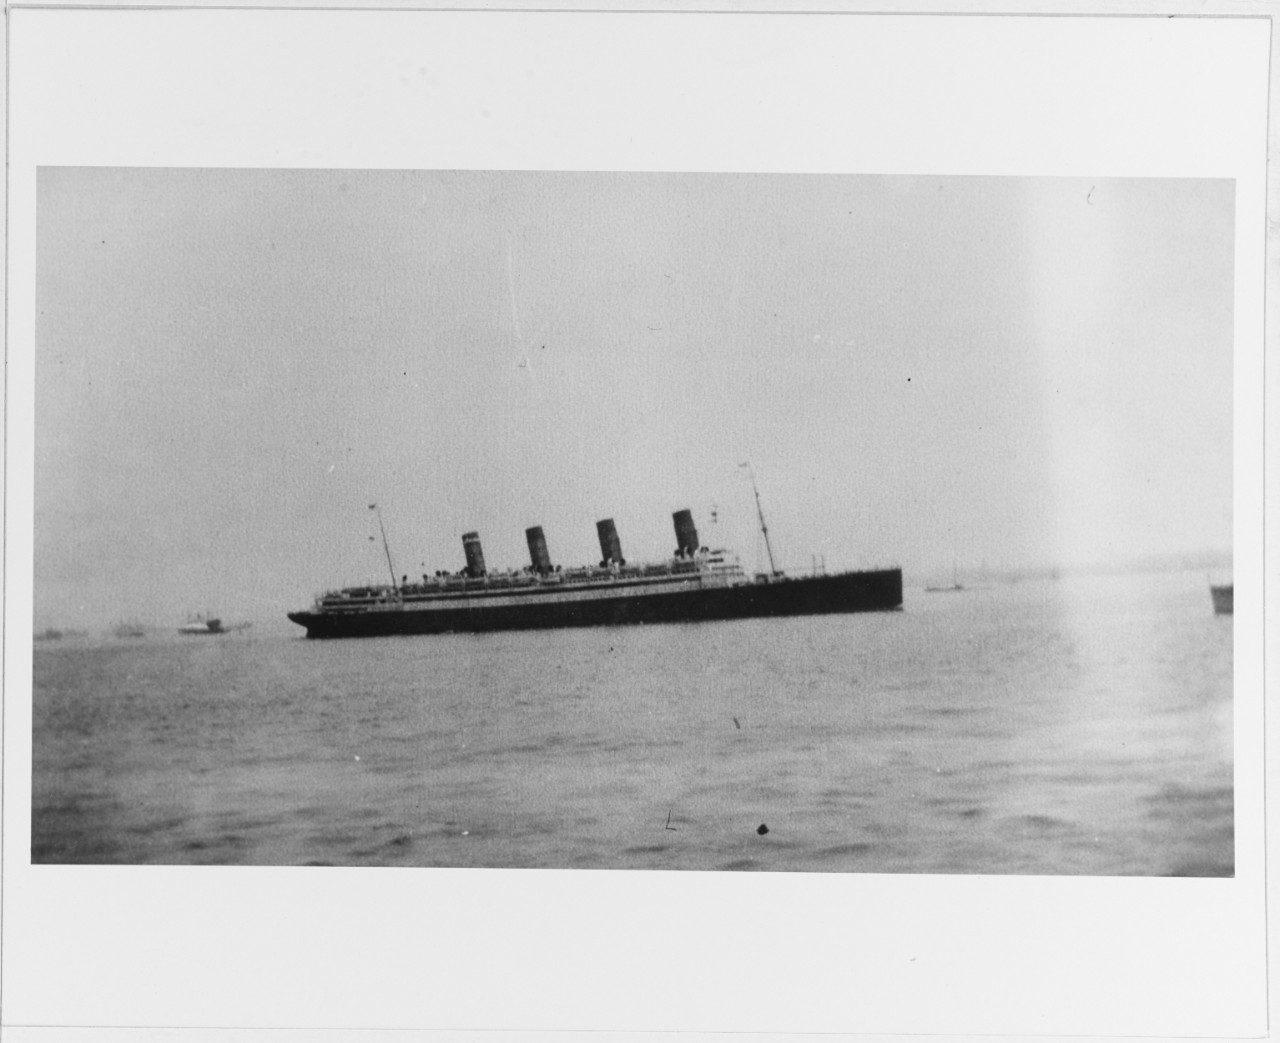 R.M.S. AQUITANIA (British passenger liner)